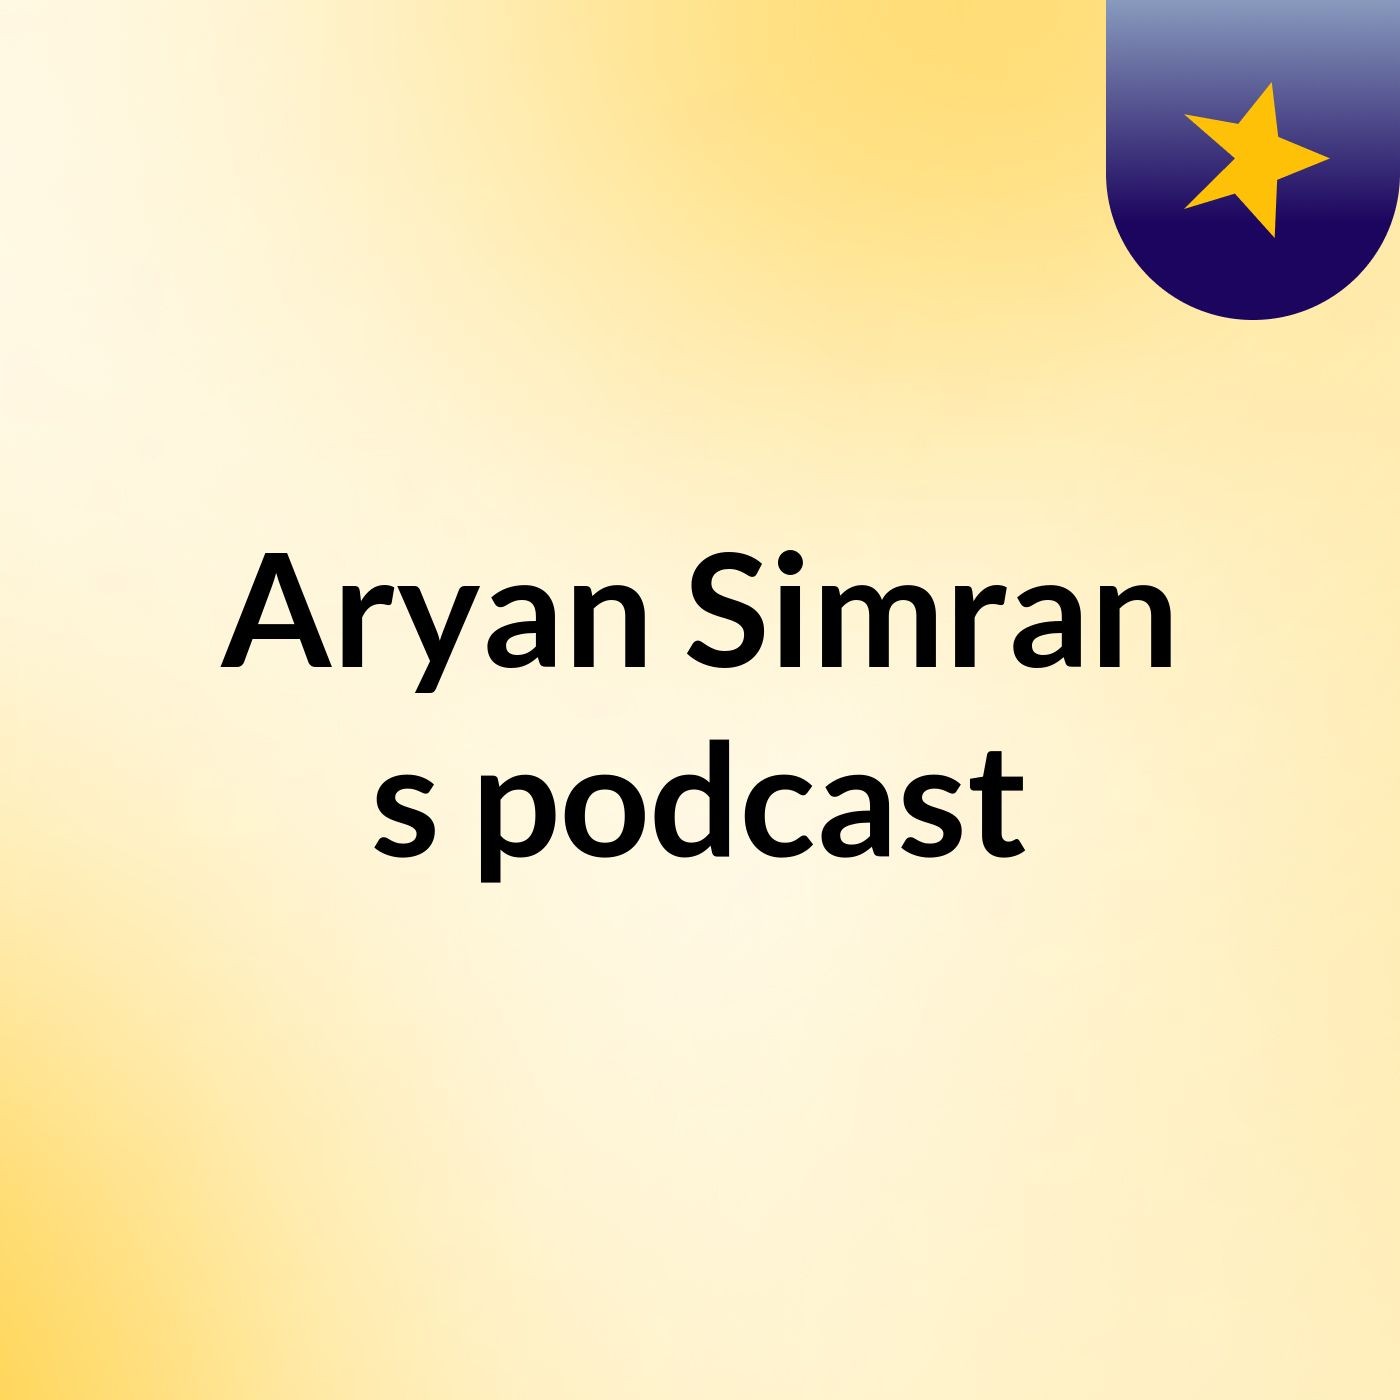 Aryan Simran's podcast